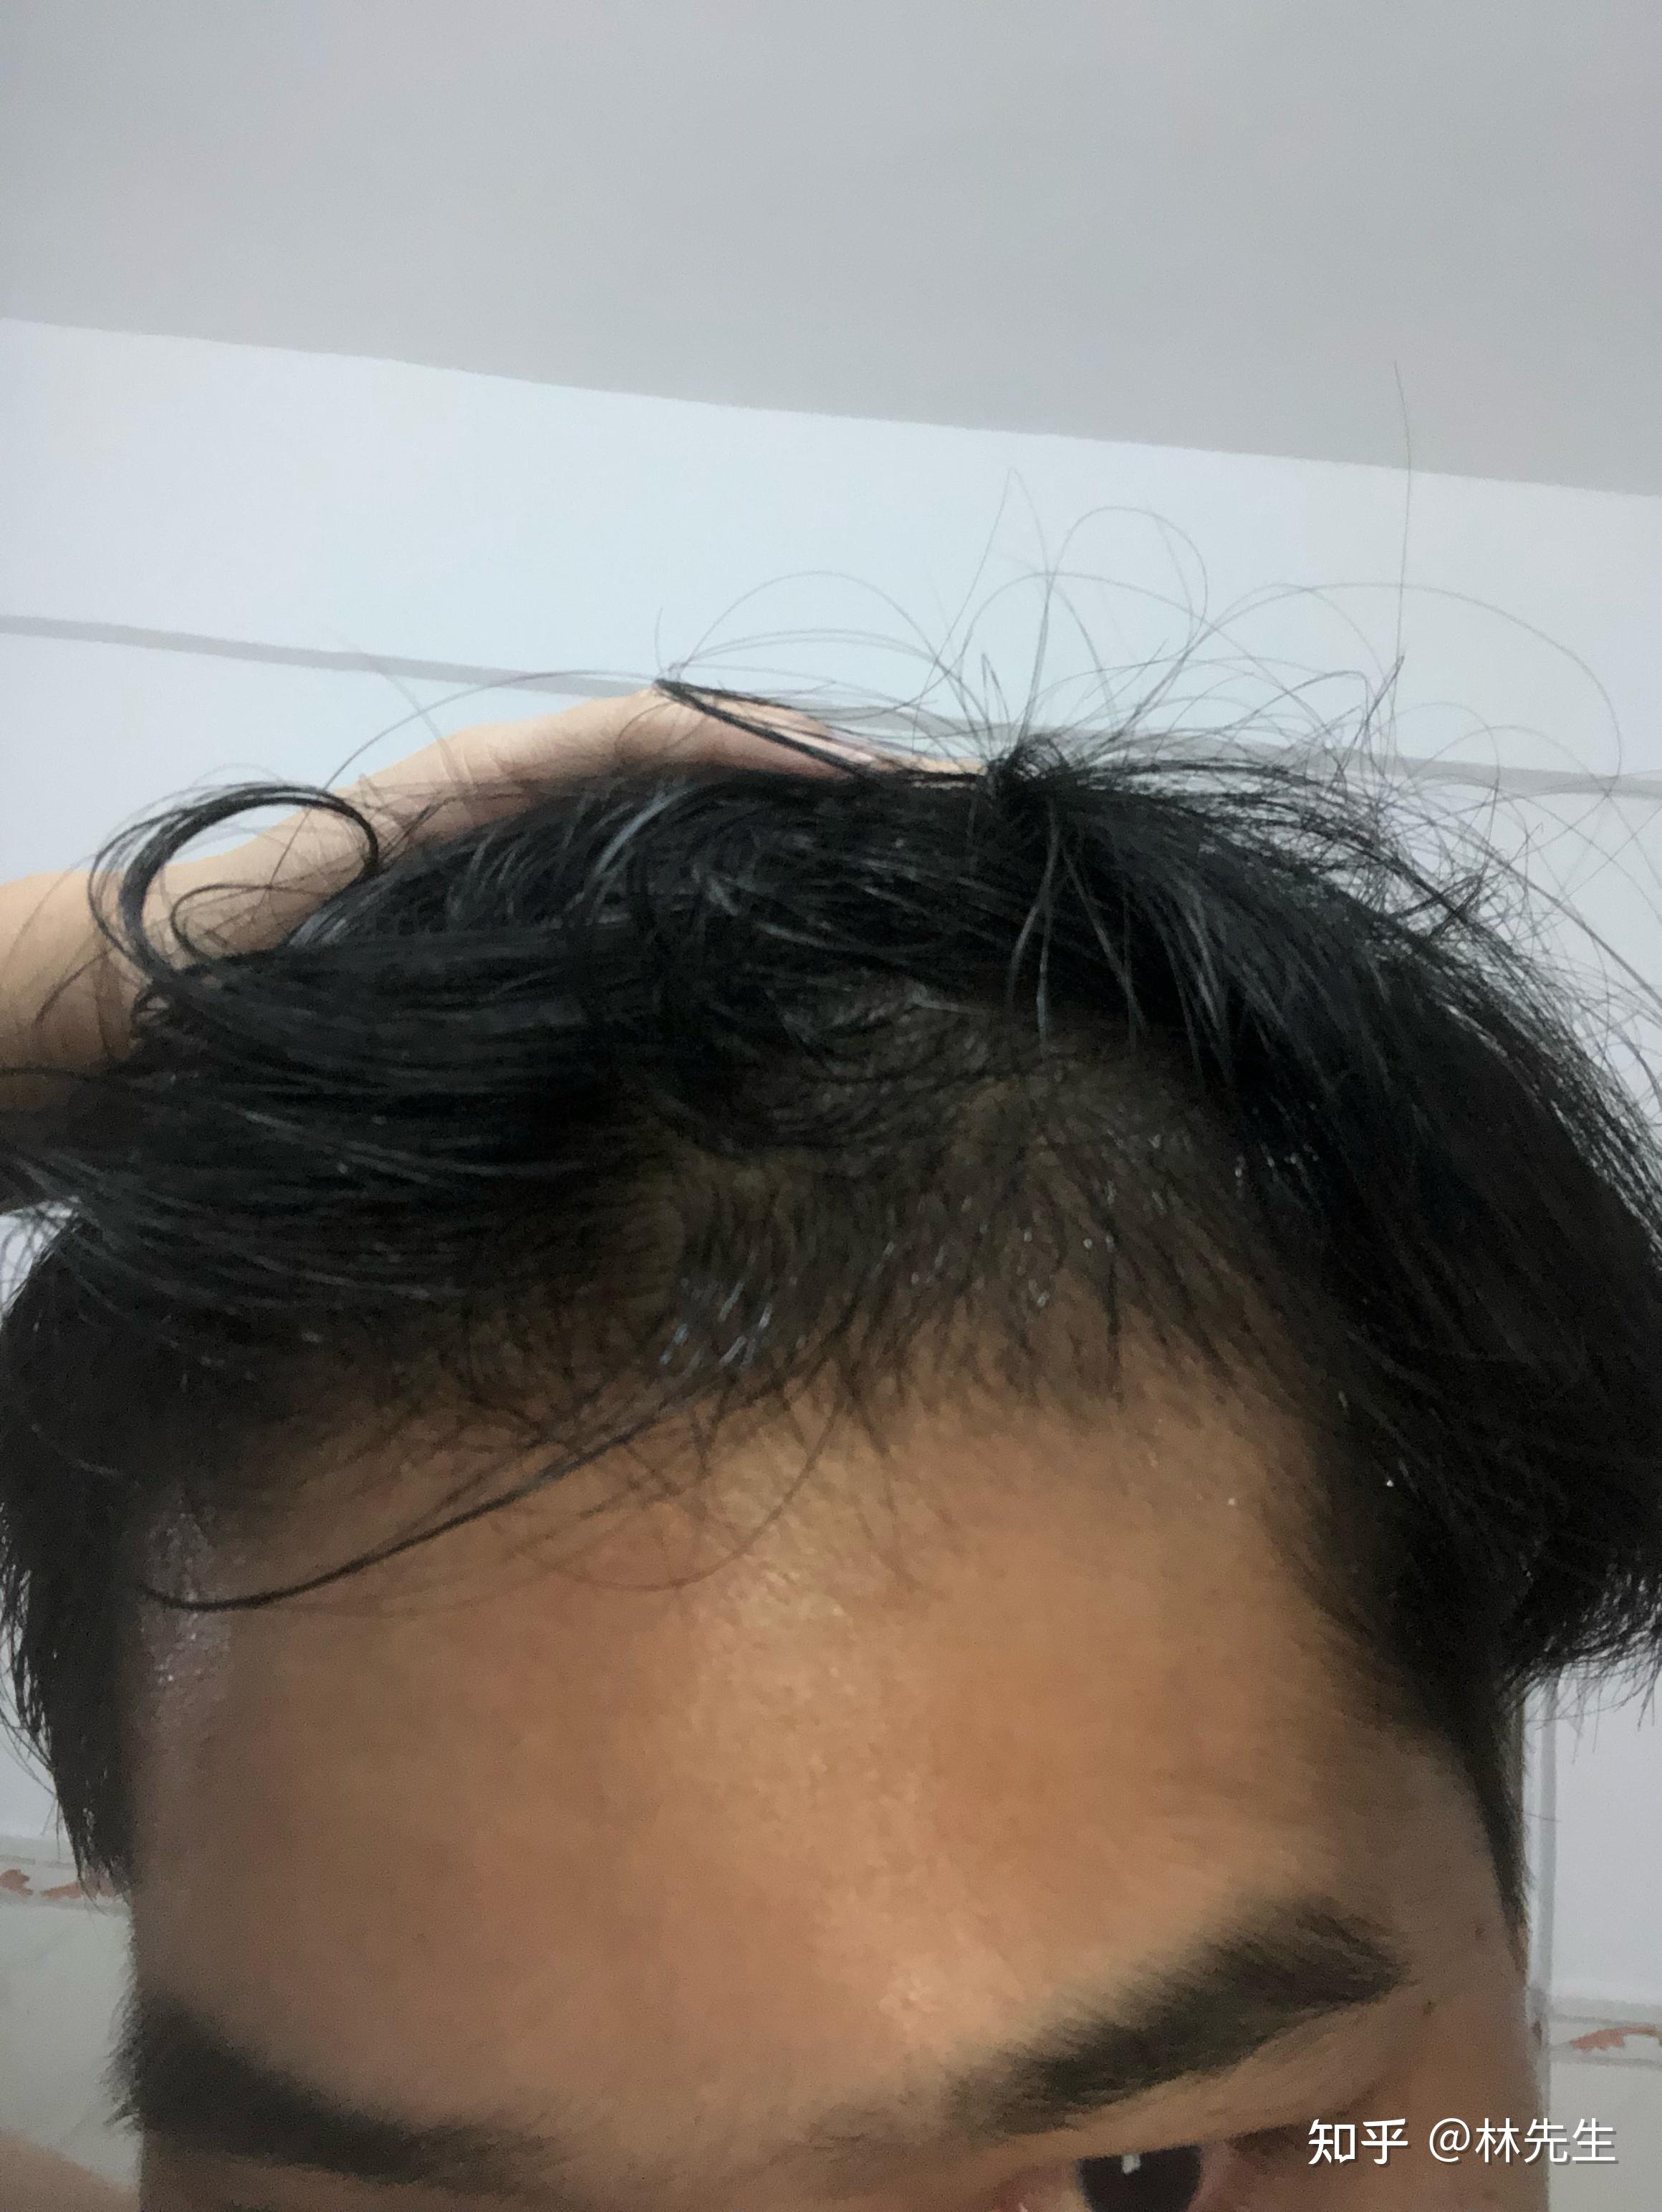 治疗m型脱发,用米诺加非那第三个月